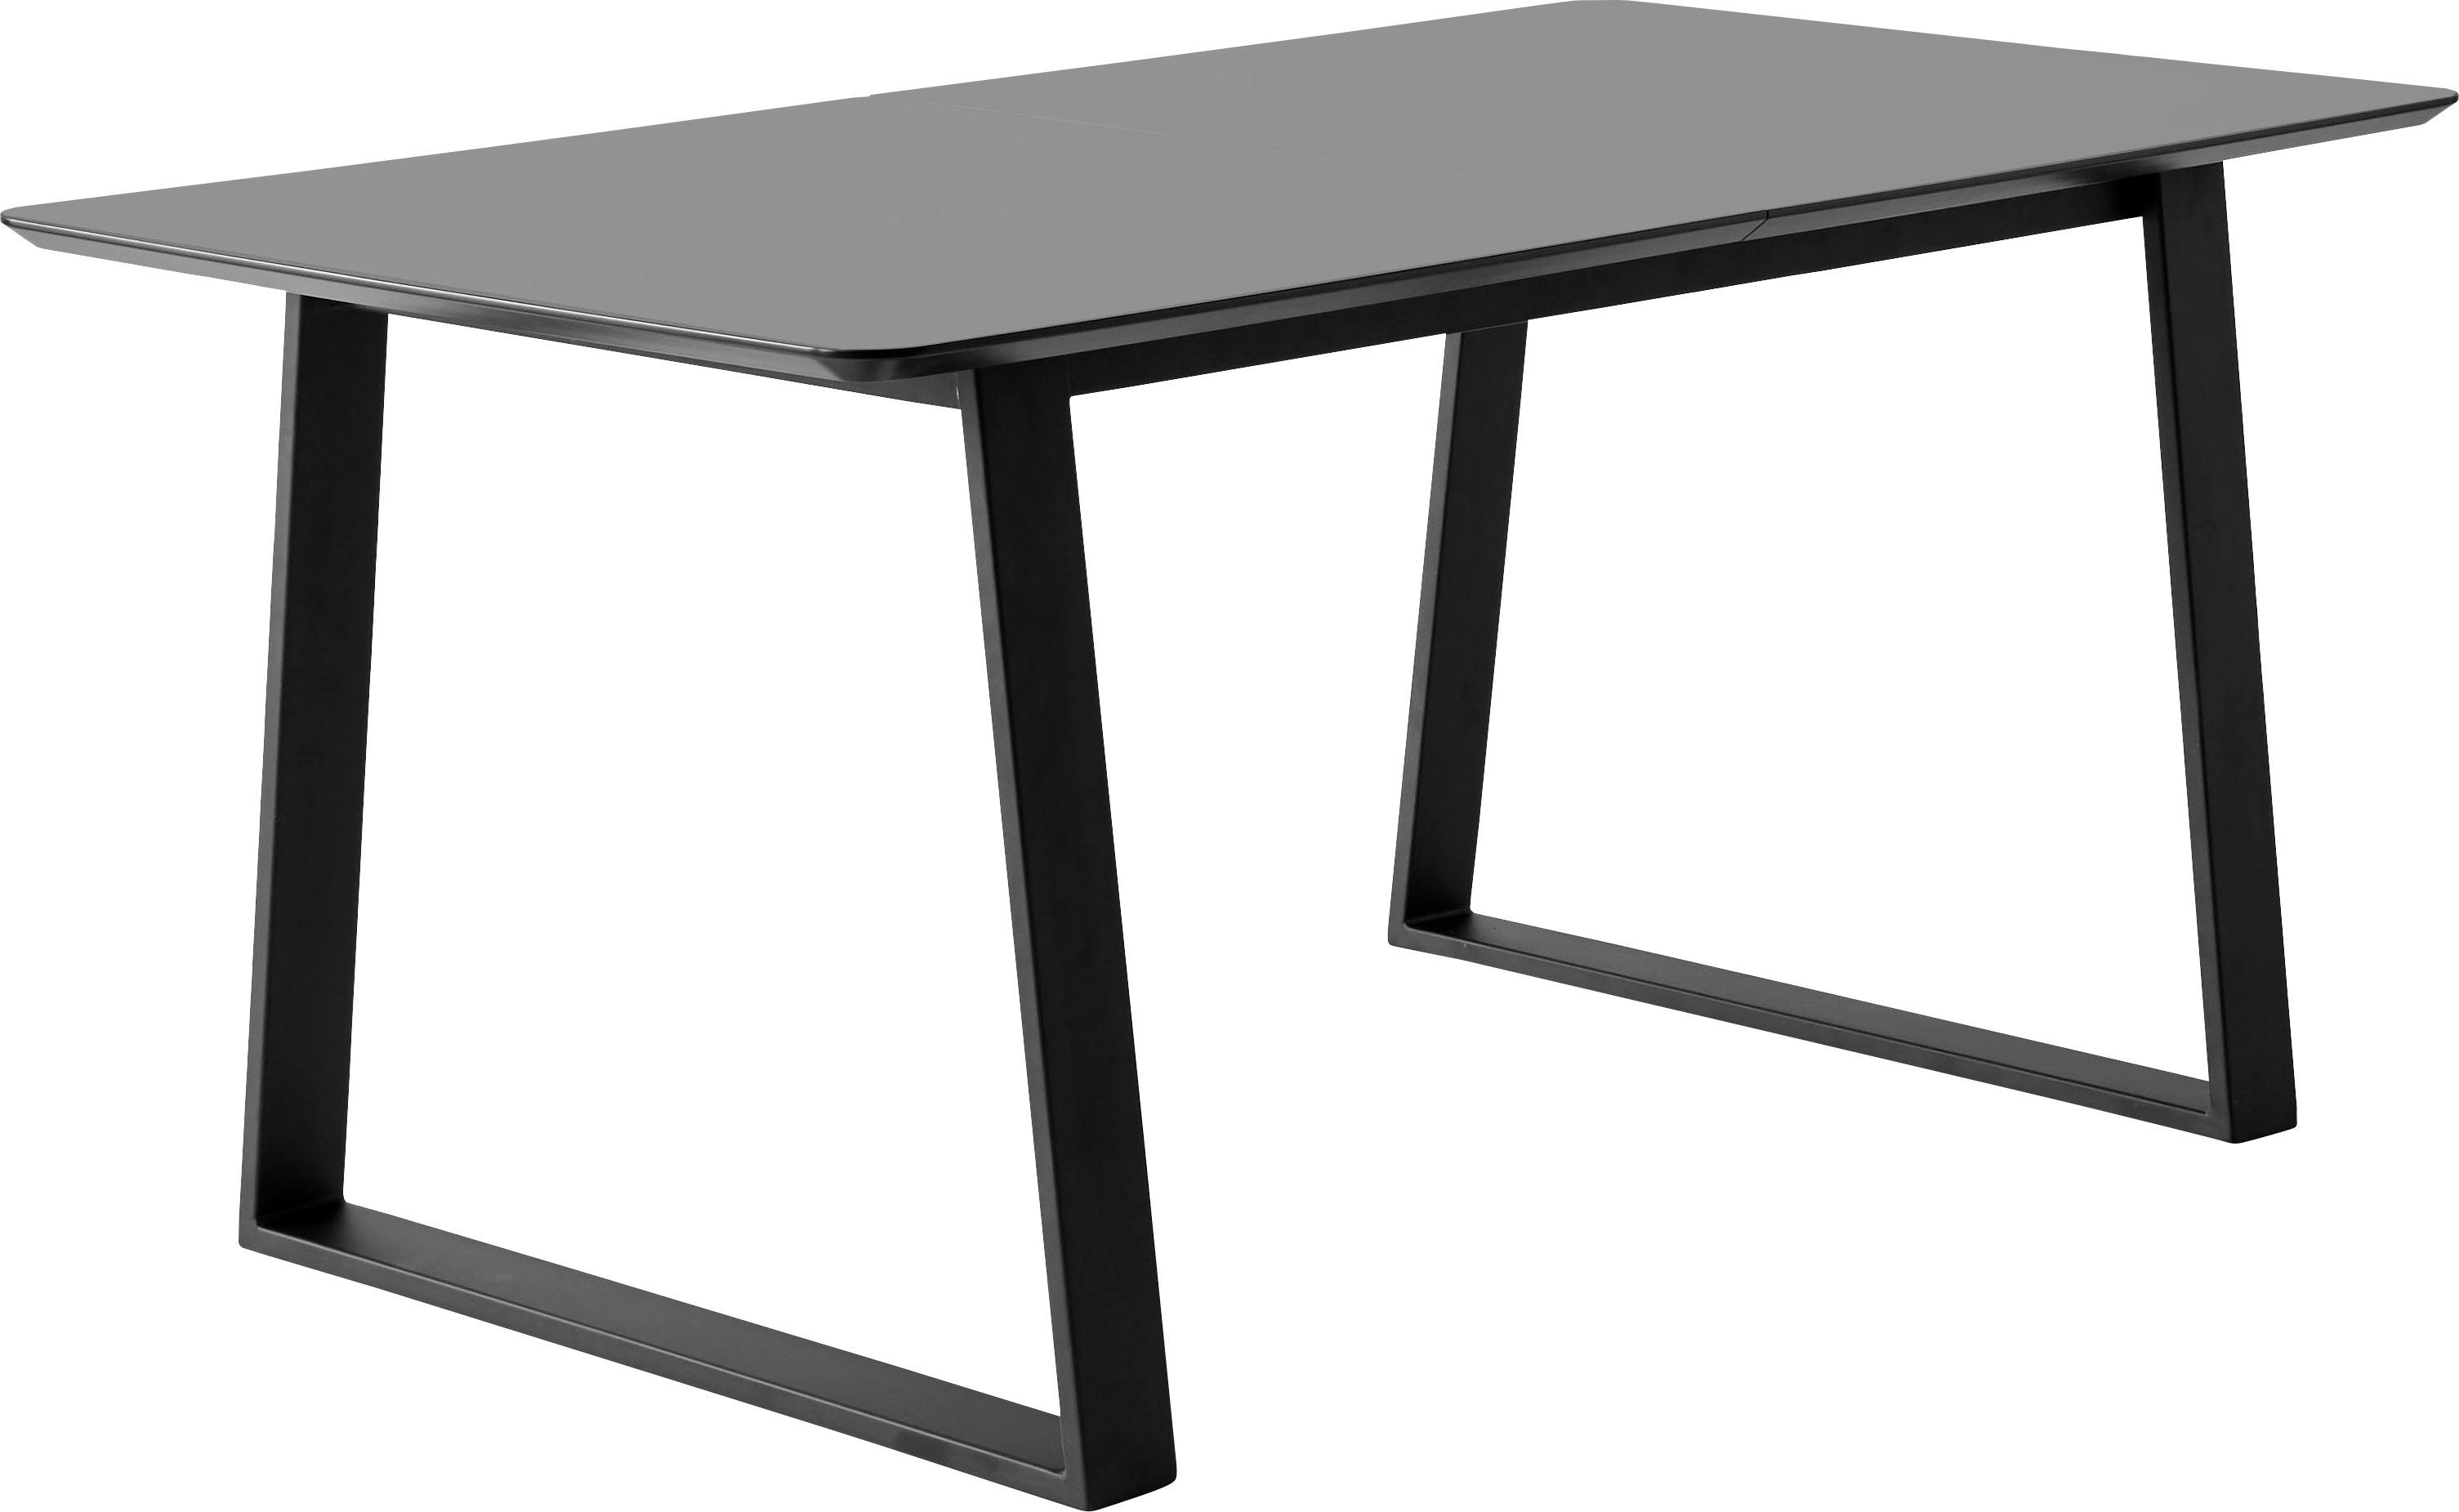 Hammel Furniture abgerundete Meza Hammel, 2 Tischplatte by Graphit Esstisch MDF, Einlegeplatten Metallgestell, Trapez